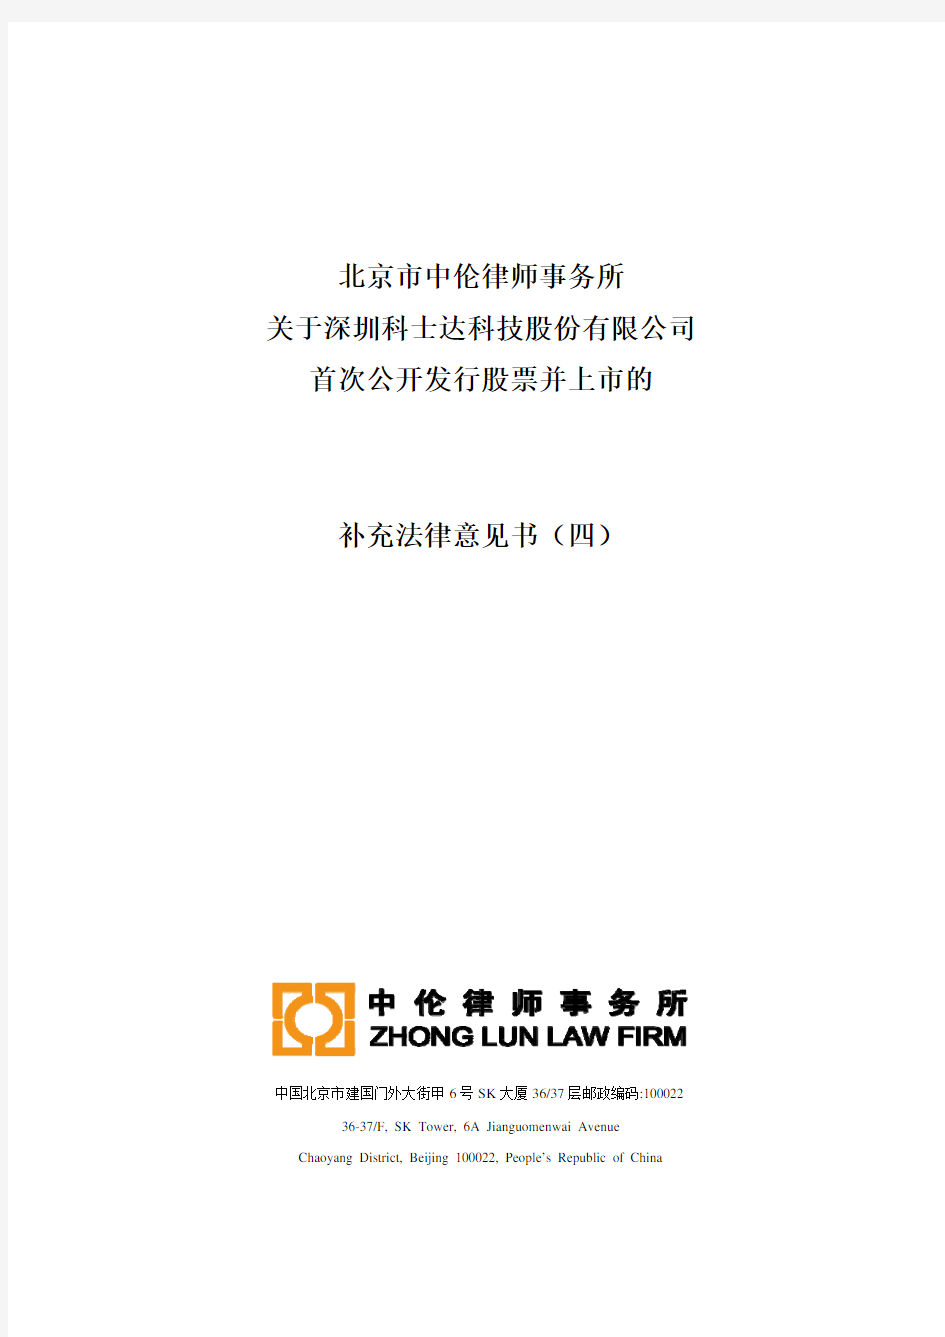 科士达：北京市中伦律师事务所关于公司首次公开发行股票并上市的补充法律意见书(四) 2010-11-16